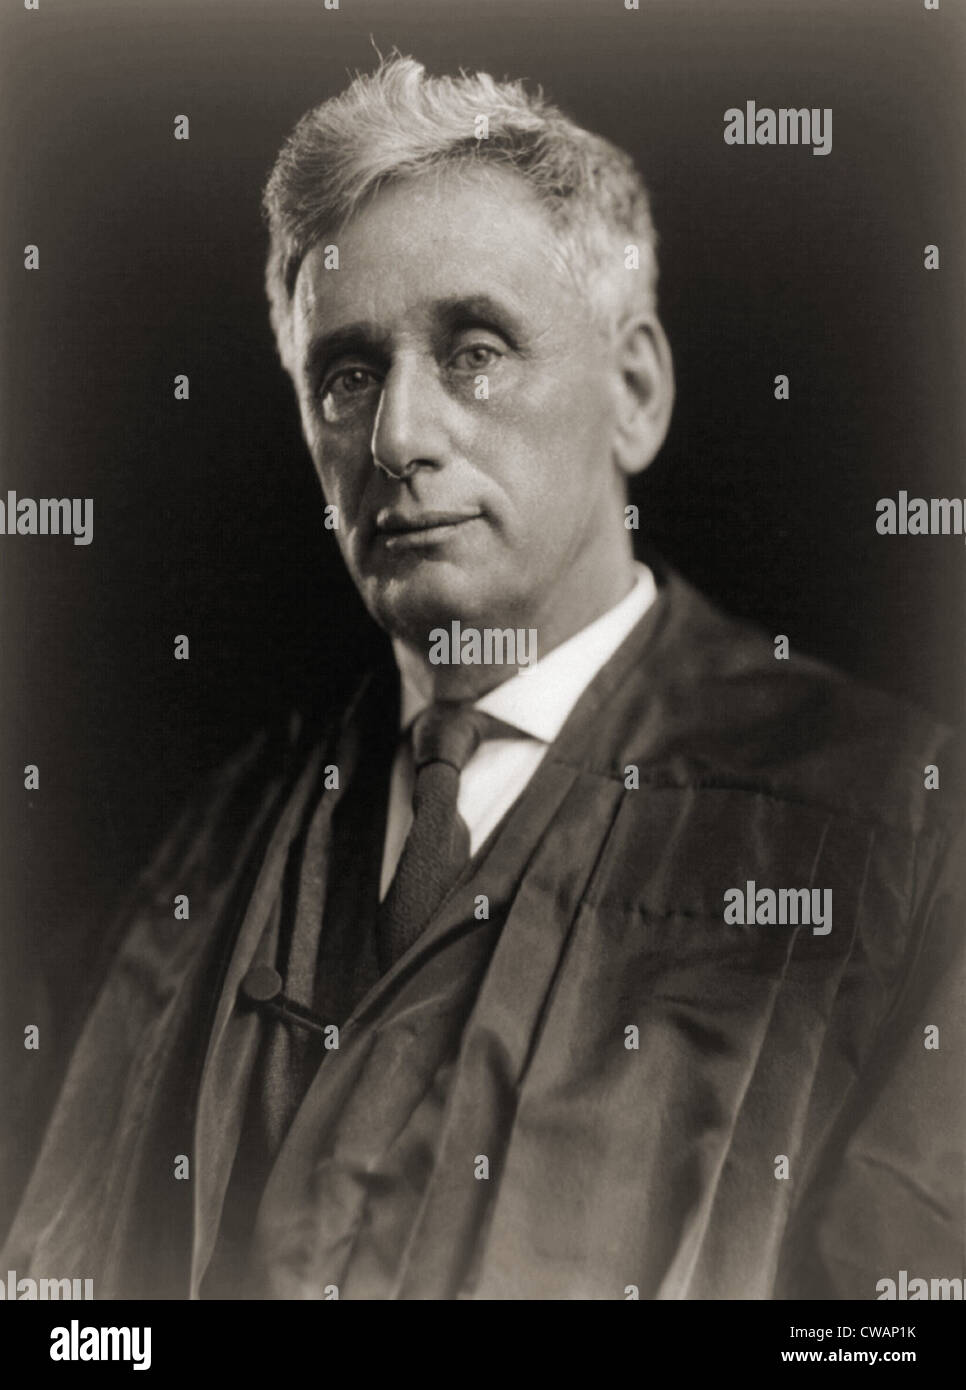 Louis Brandeis Autograph - Magnificent signed portrait photograph